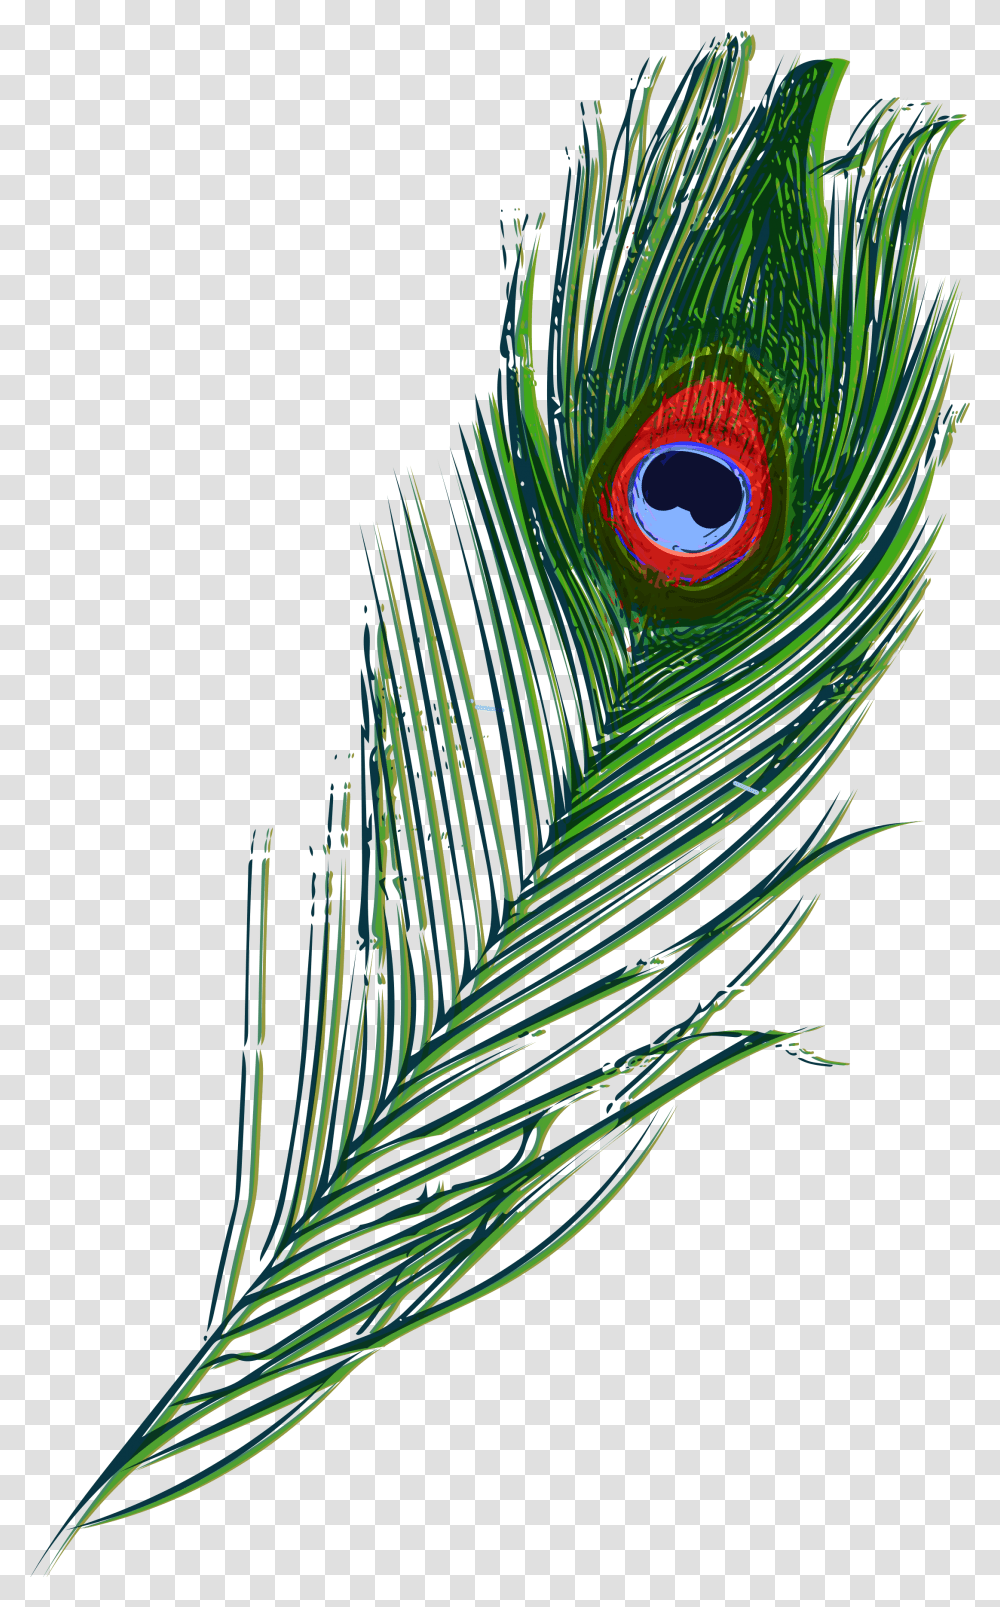 Illustration, Bird, Animal, Peacock, Veins Transparent Png